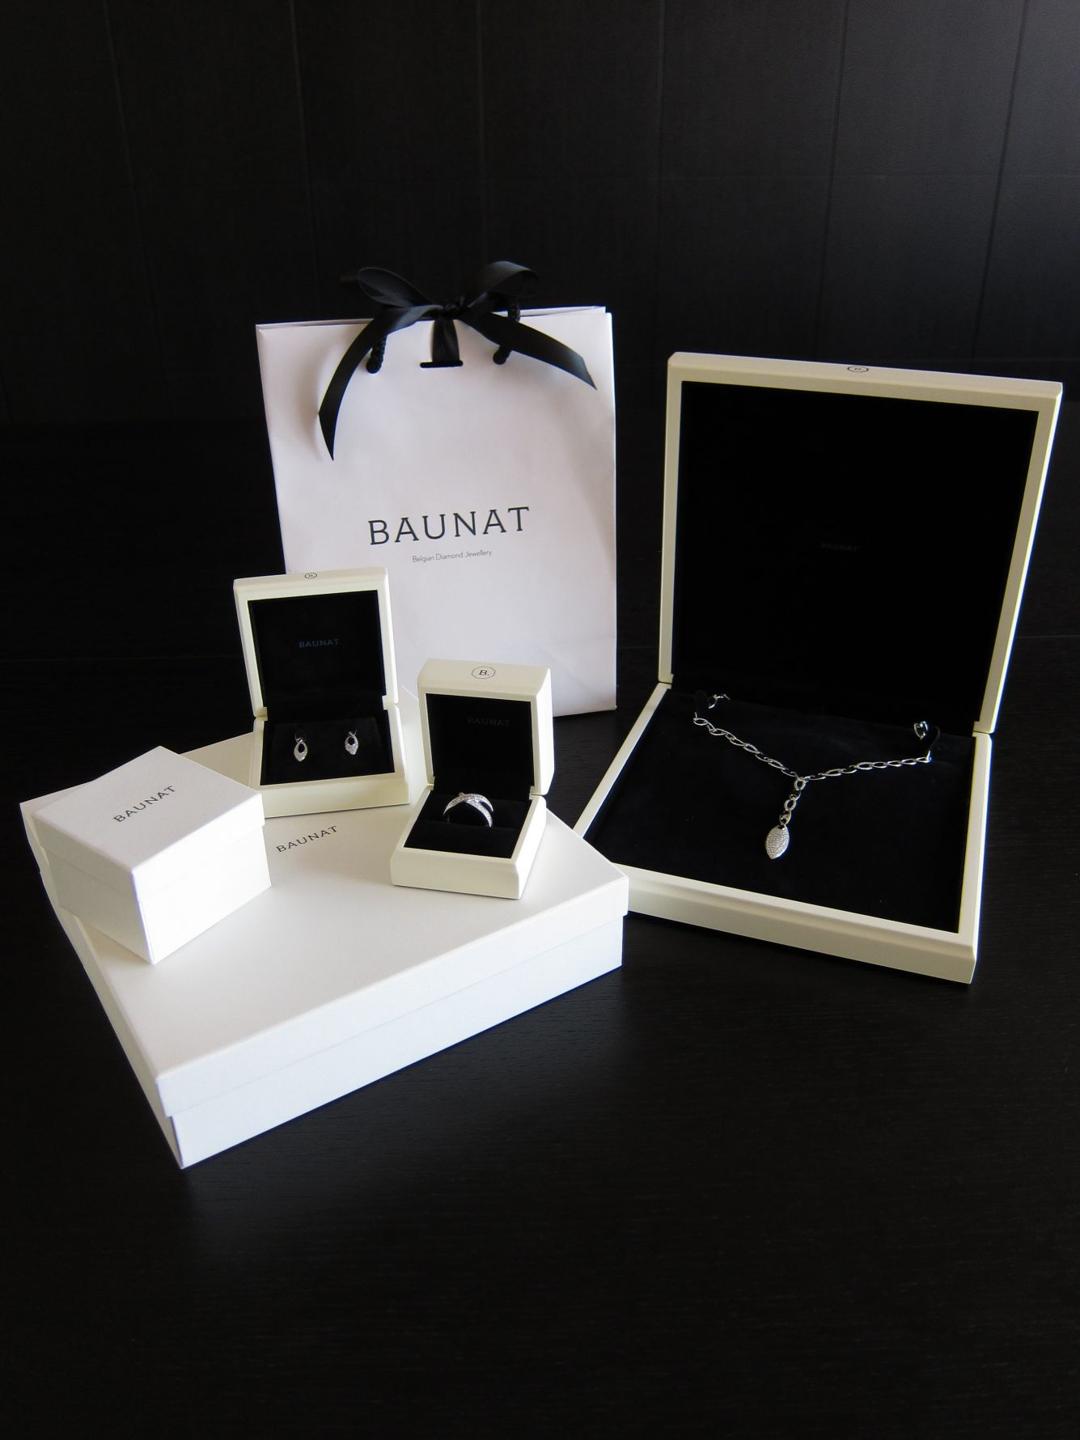 De BAUNAT-juwelendoosjes met zwarte fluwelen voering en crèmekleurige buitenkant